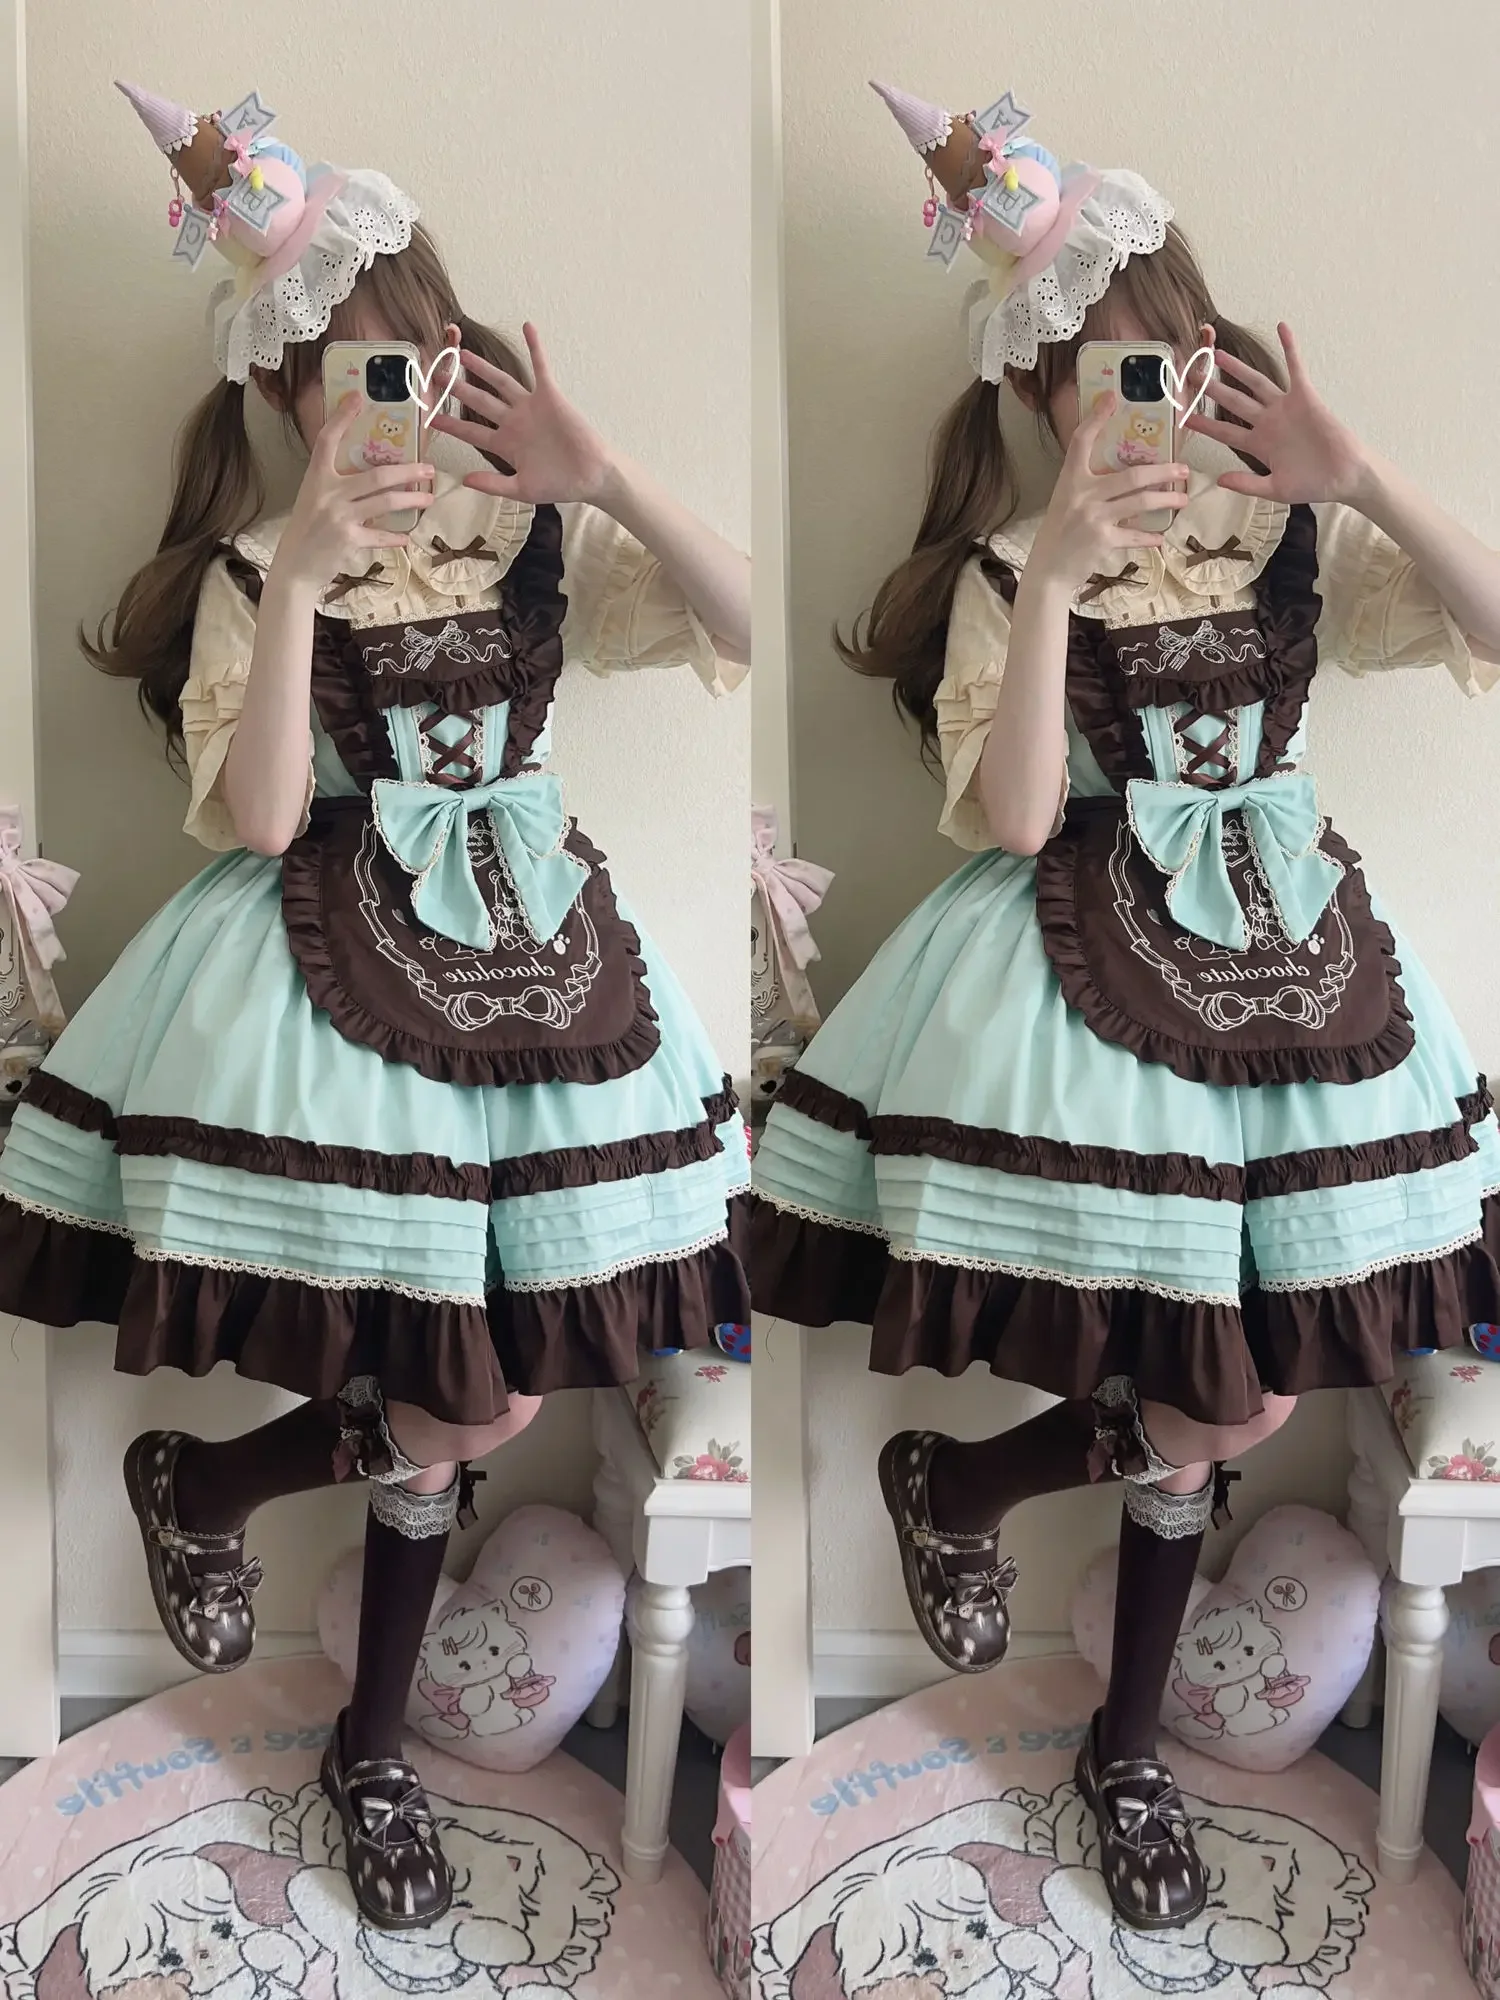 

Новое японское милое кружевное платье JSK с оборками в виде мятного шоколада с милым бантом, мягкое летнее женское платье в стиле сладкой Лолиты для девушек